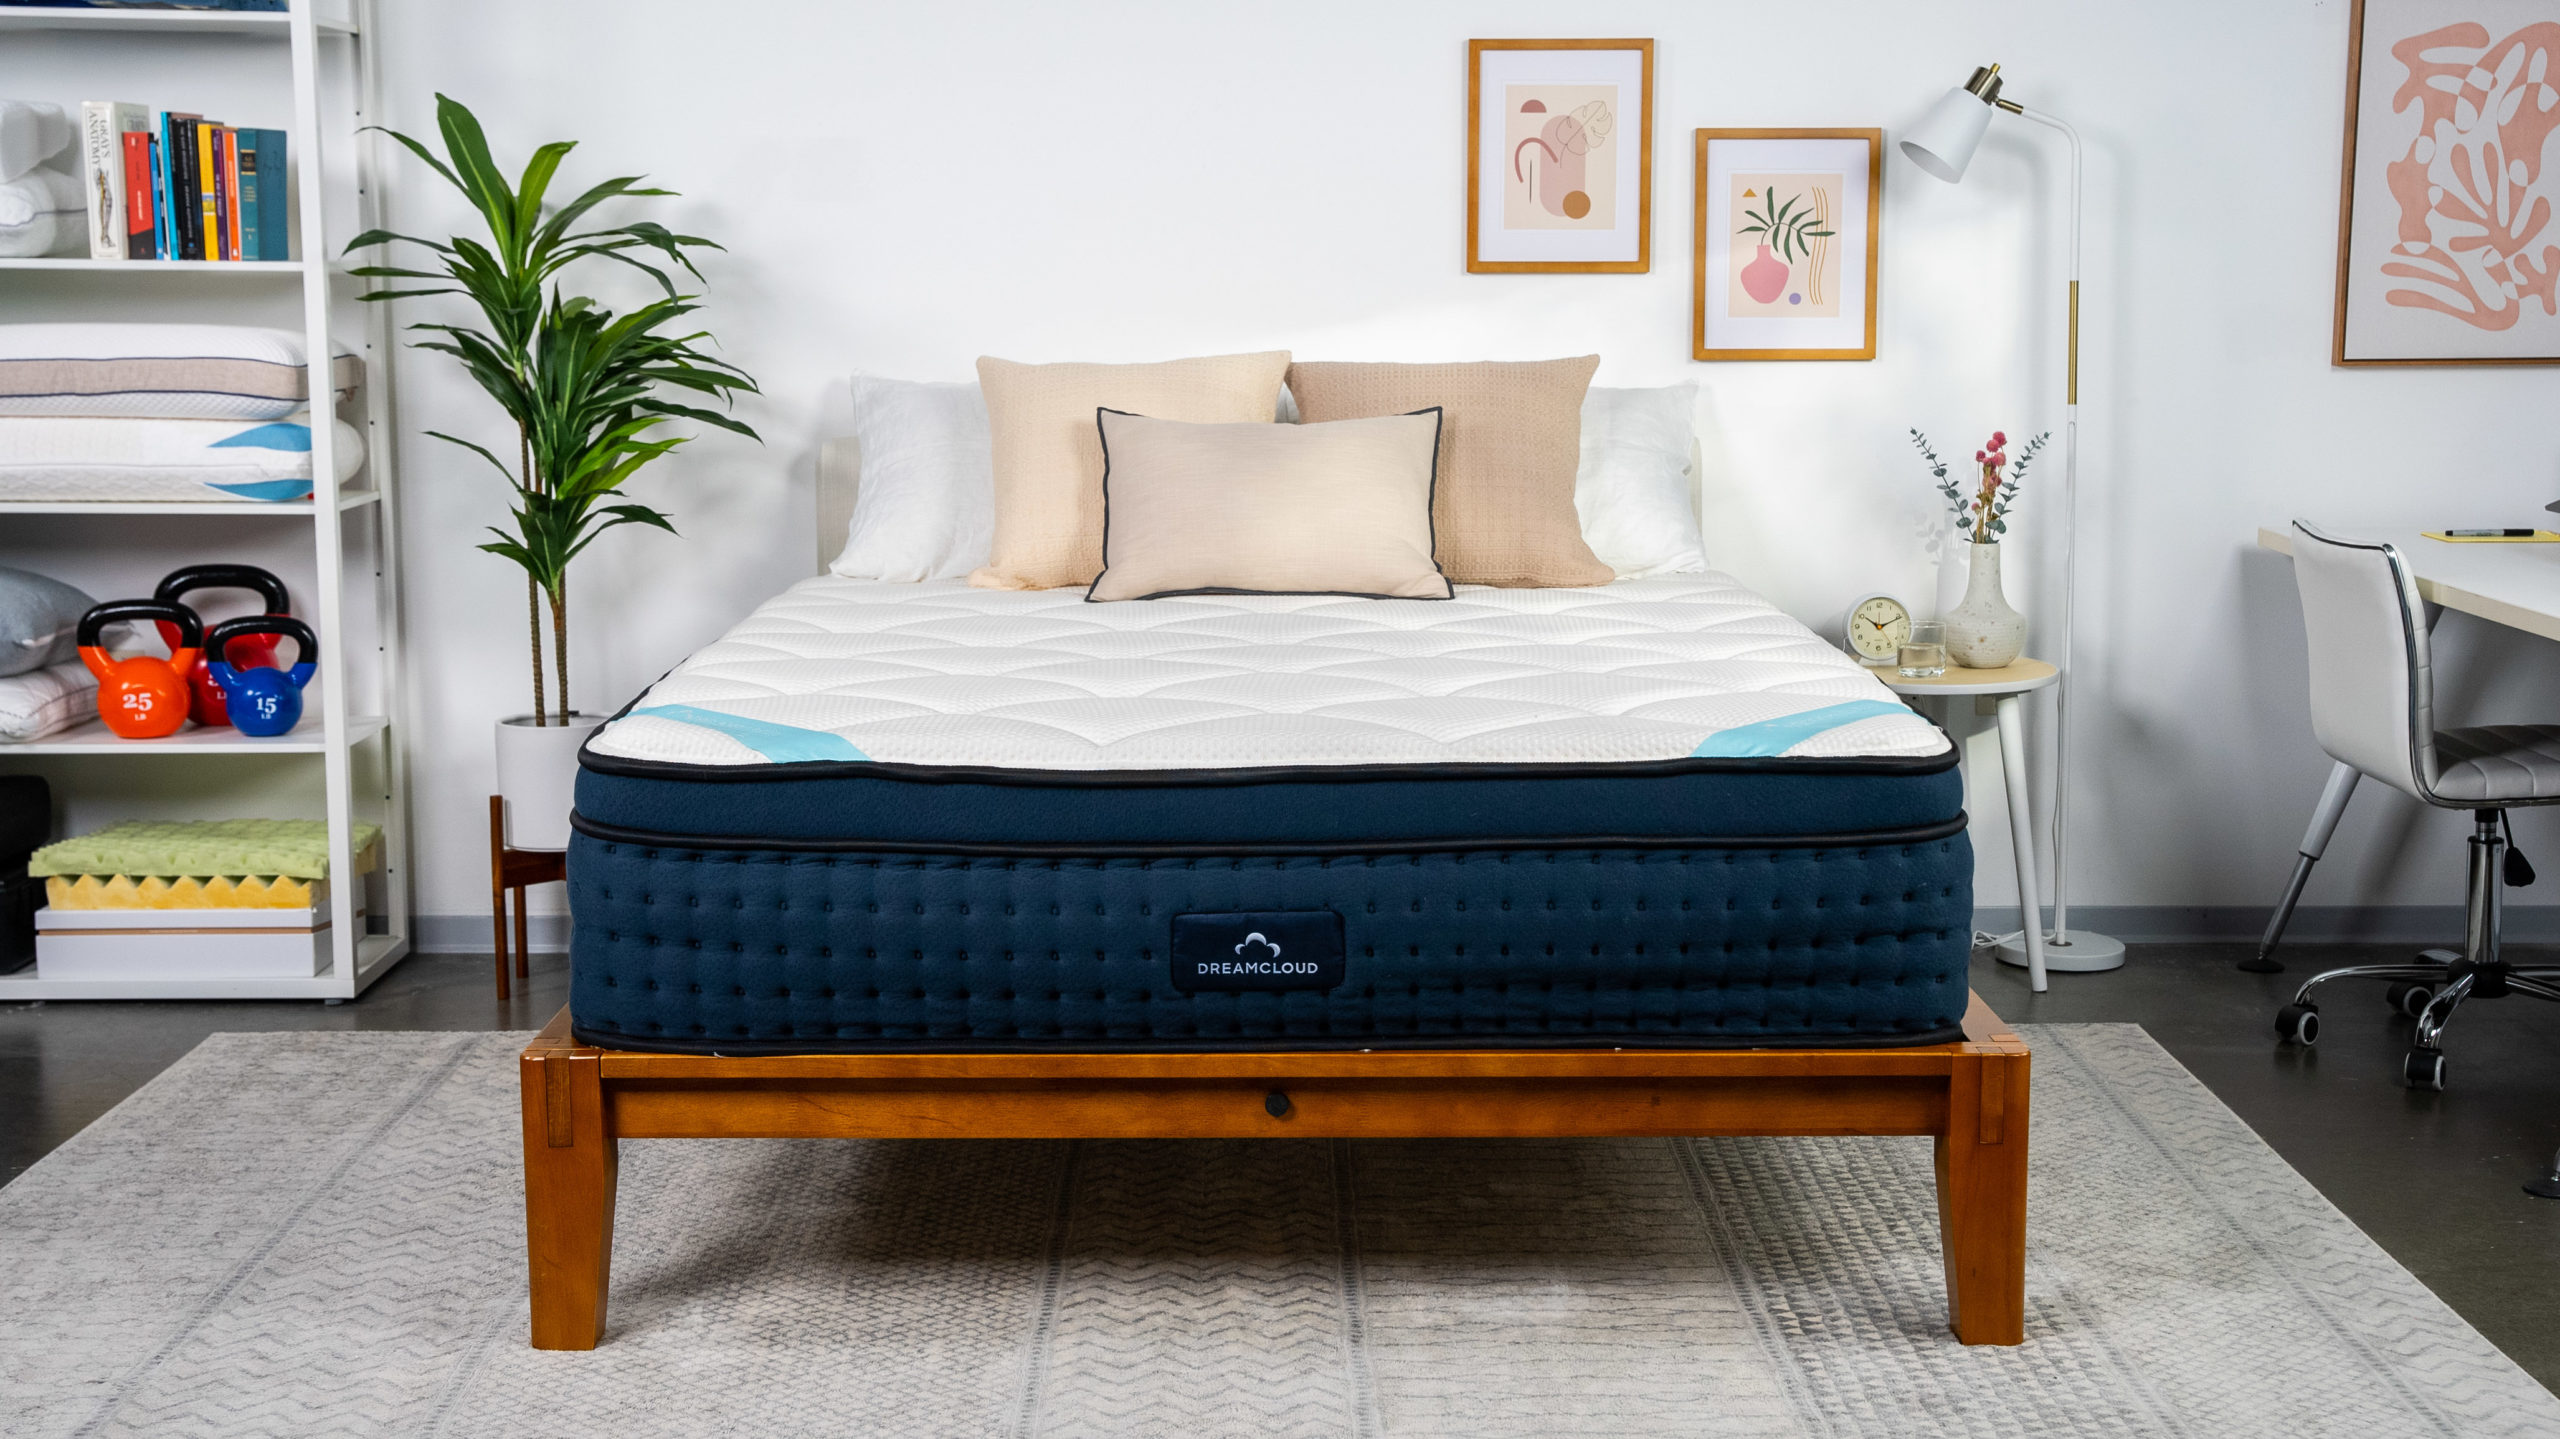 premier sleep orthocare mattress